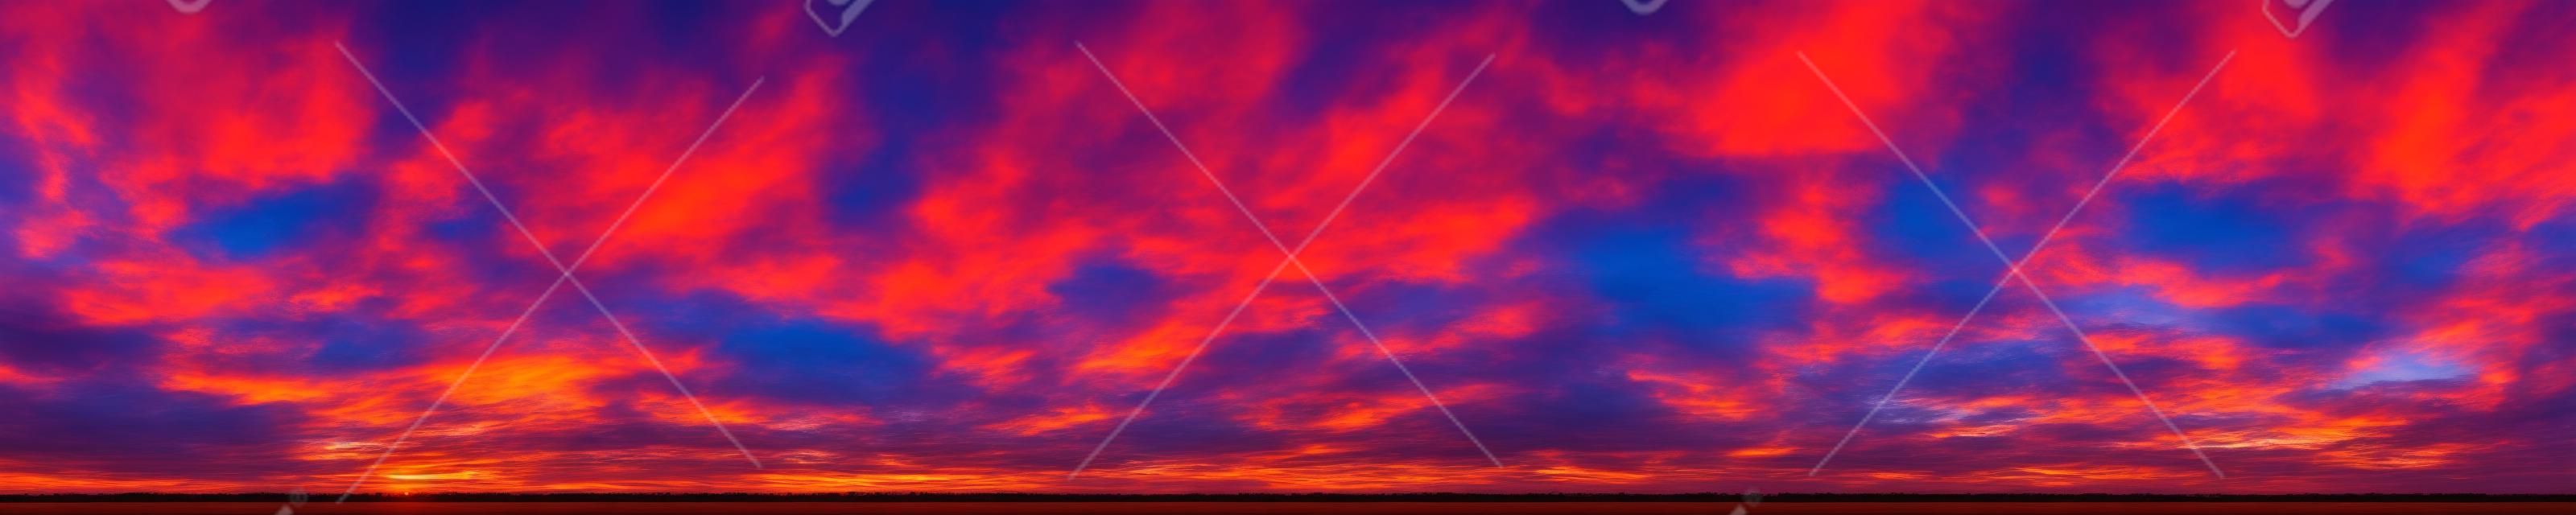 Panorama di colori vibranti drammatici con una bellissima nuvola di alba e tramonto. Immagine panoramica.